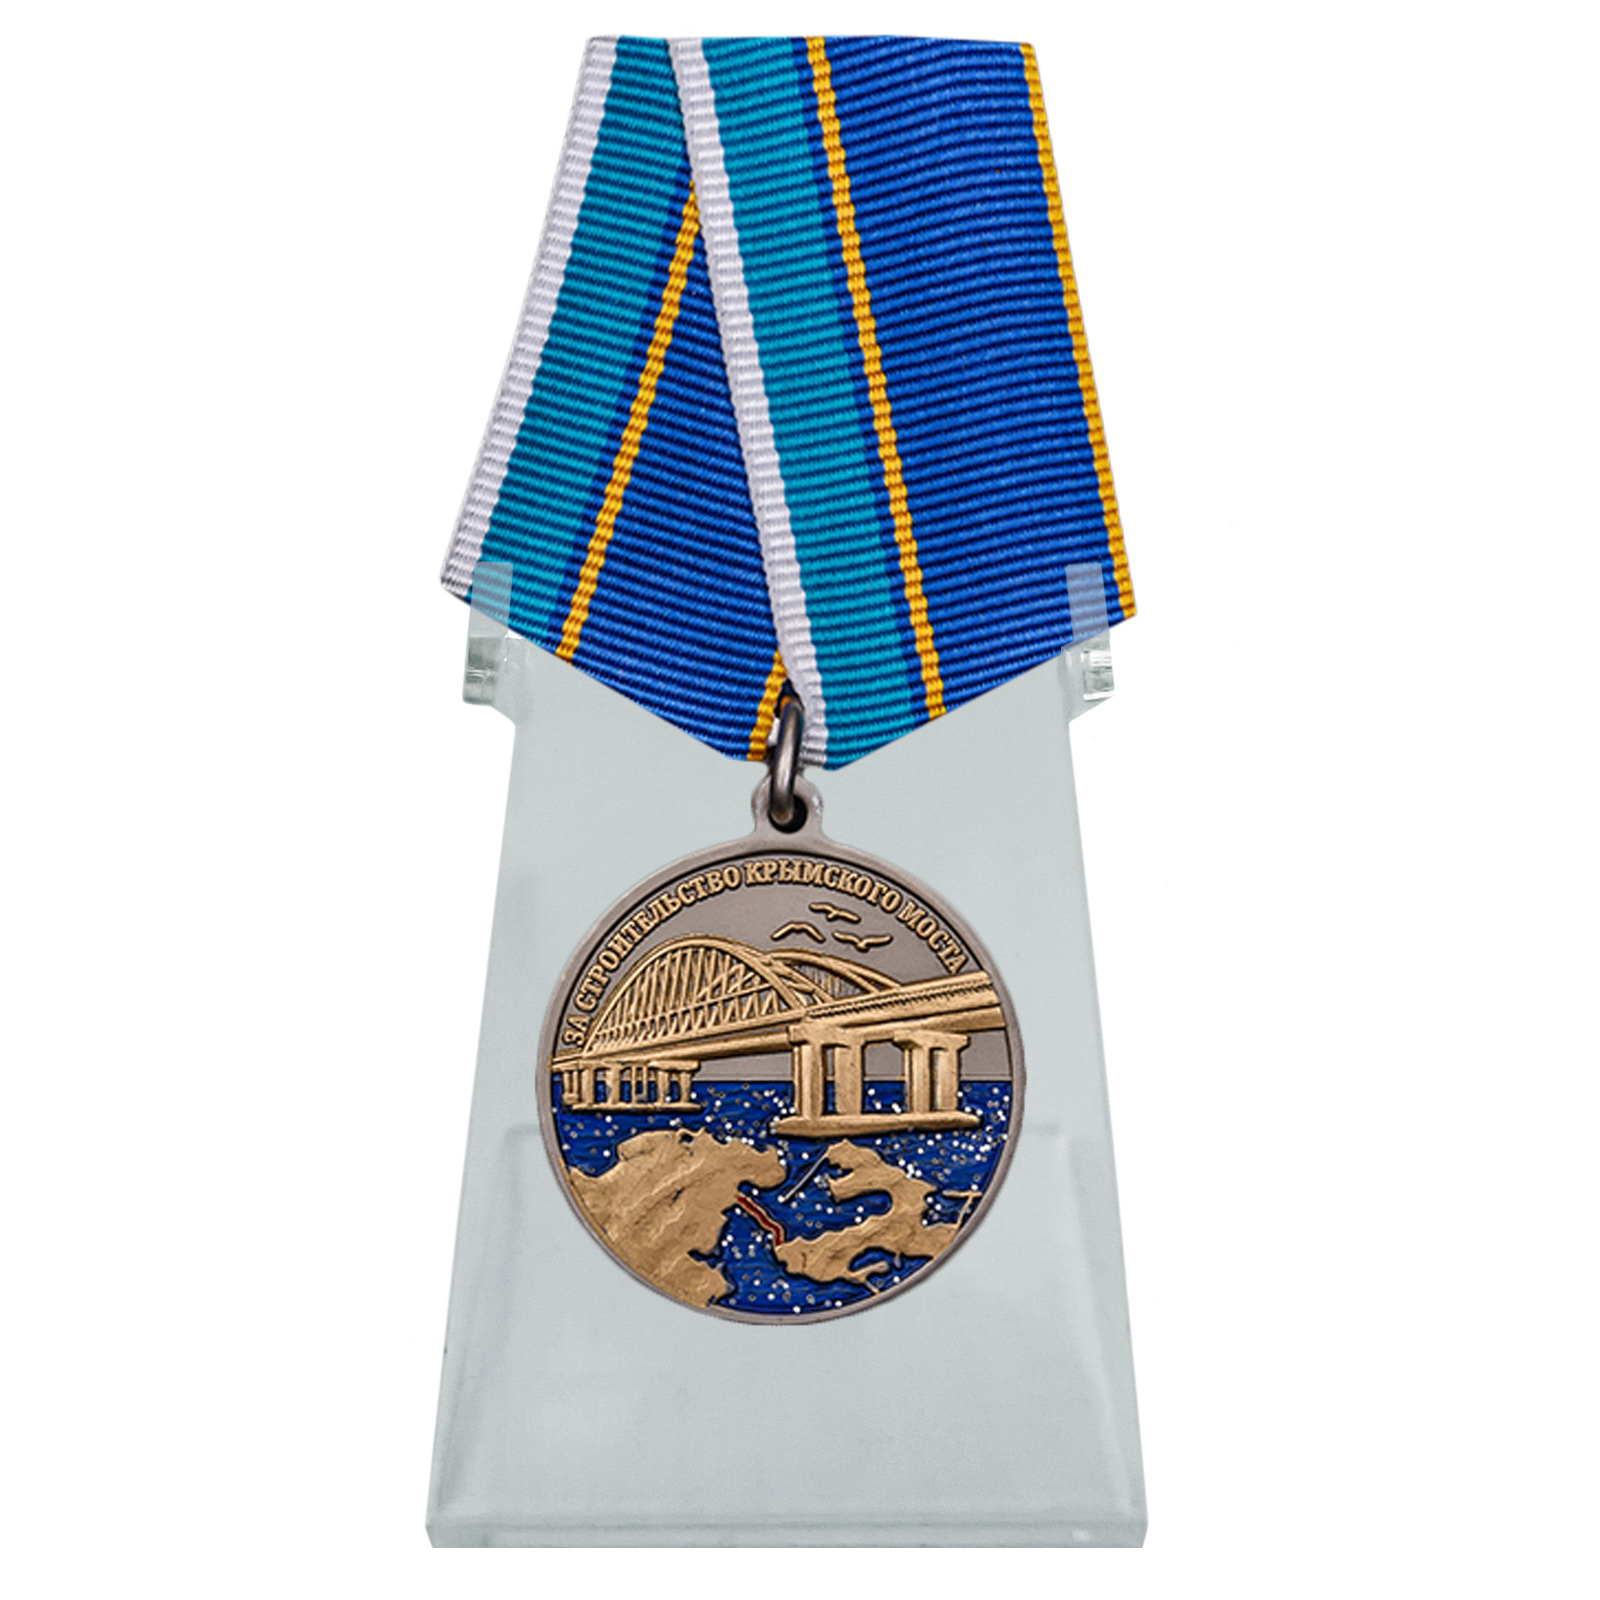 Медаль "За строительство Крымского моста" на подставке